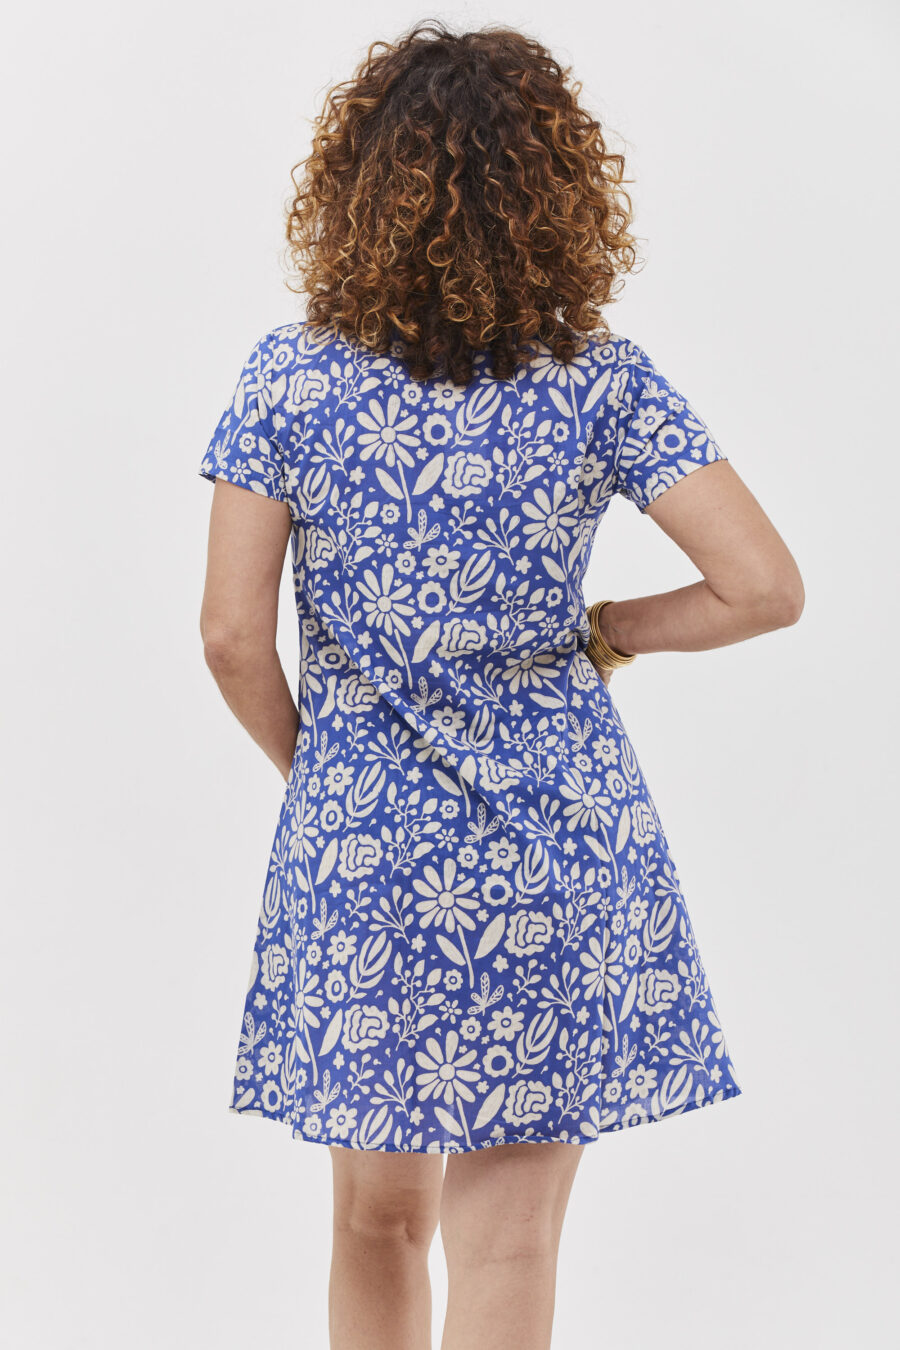 שמלת הילי | שמלת כותנה בעיצוב ייחודי - הדפס כחול רומנטי, שמלה בצבע כחול בהיר בשילוב פרינט פרחים לבנים